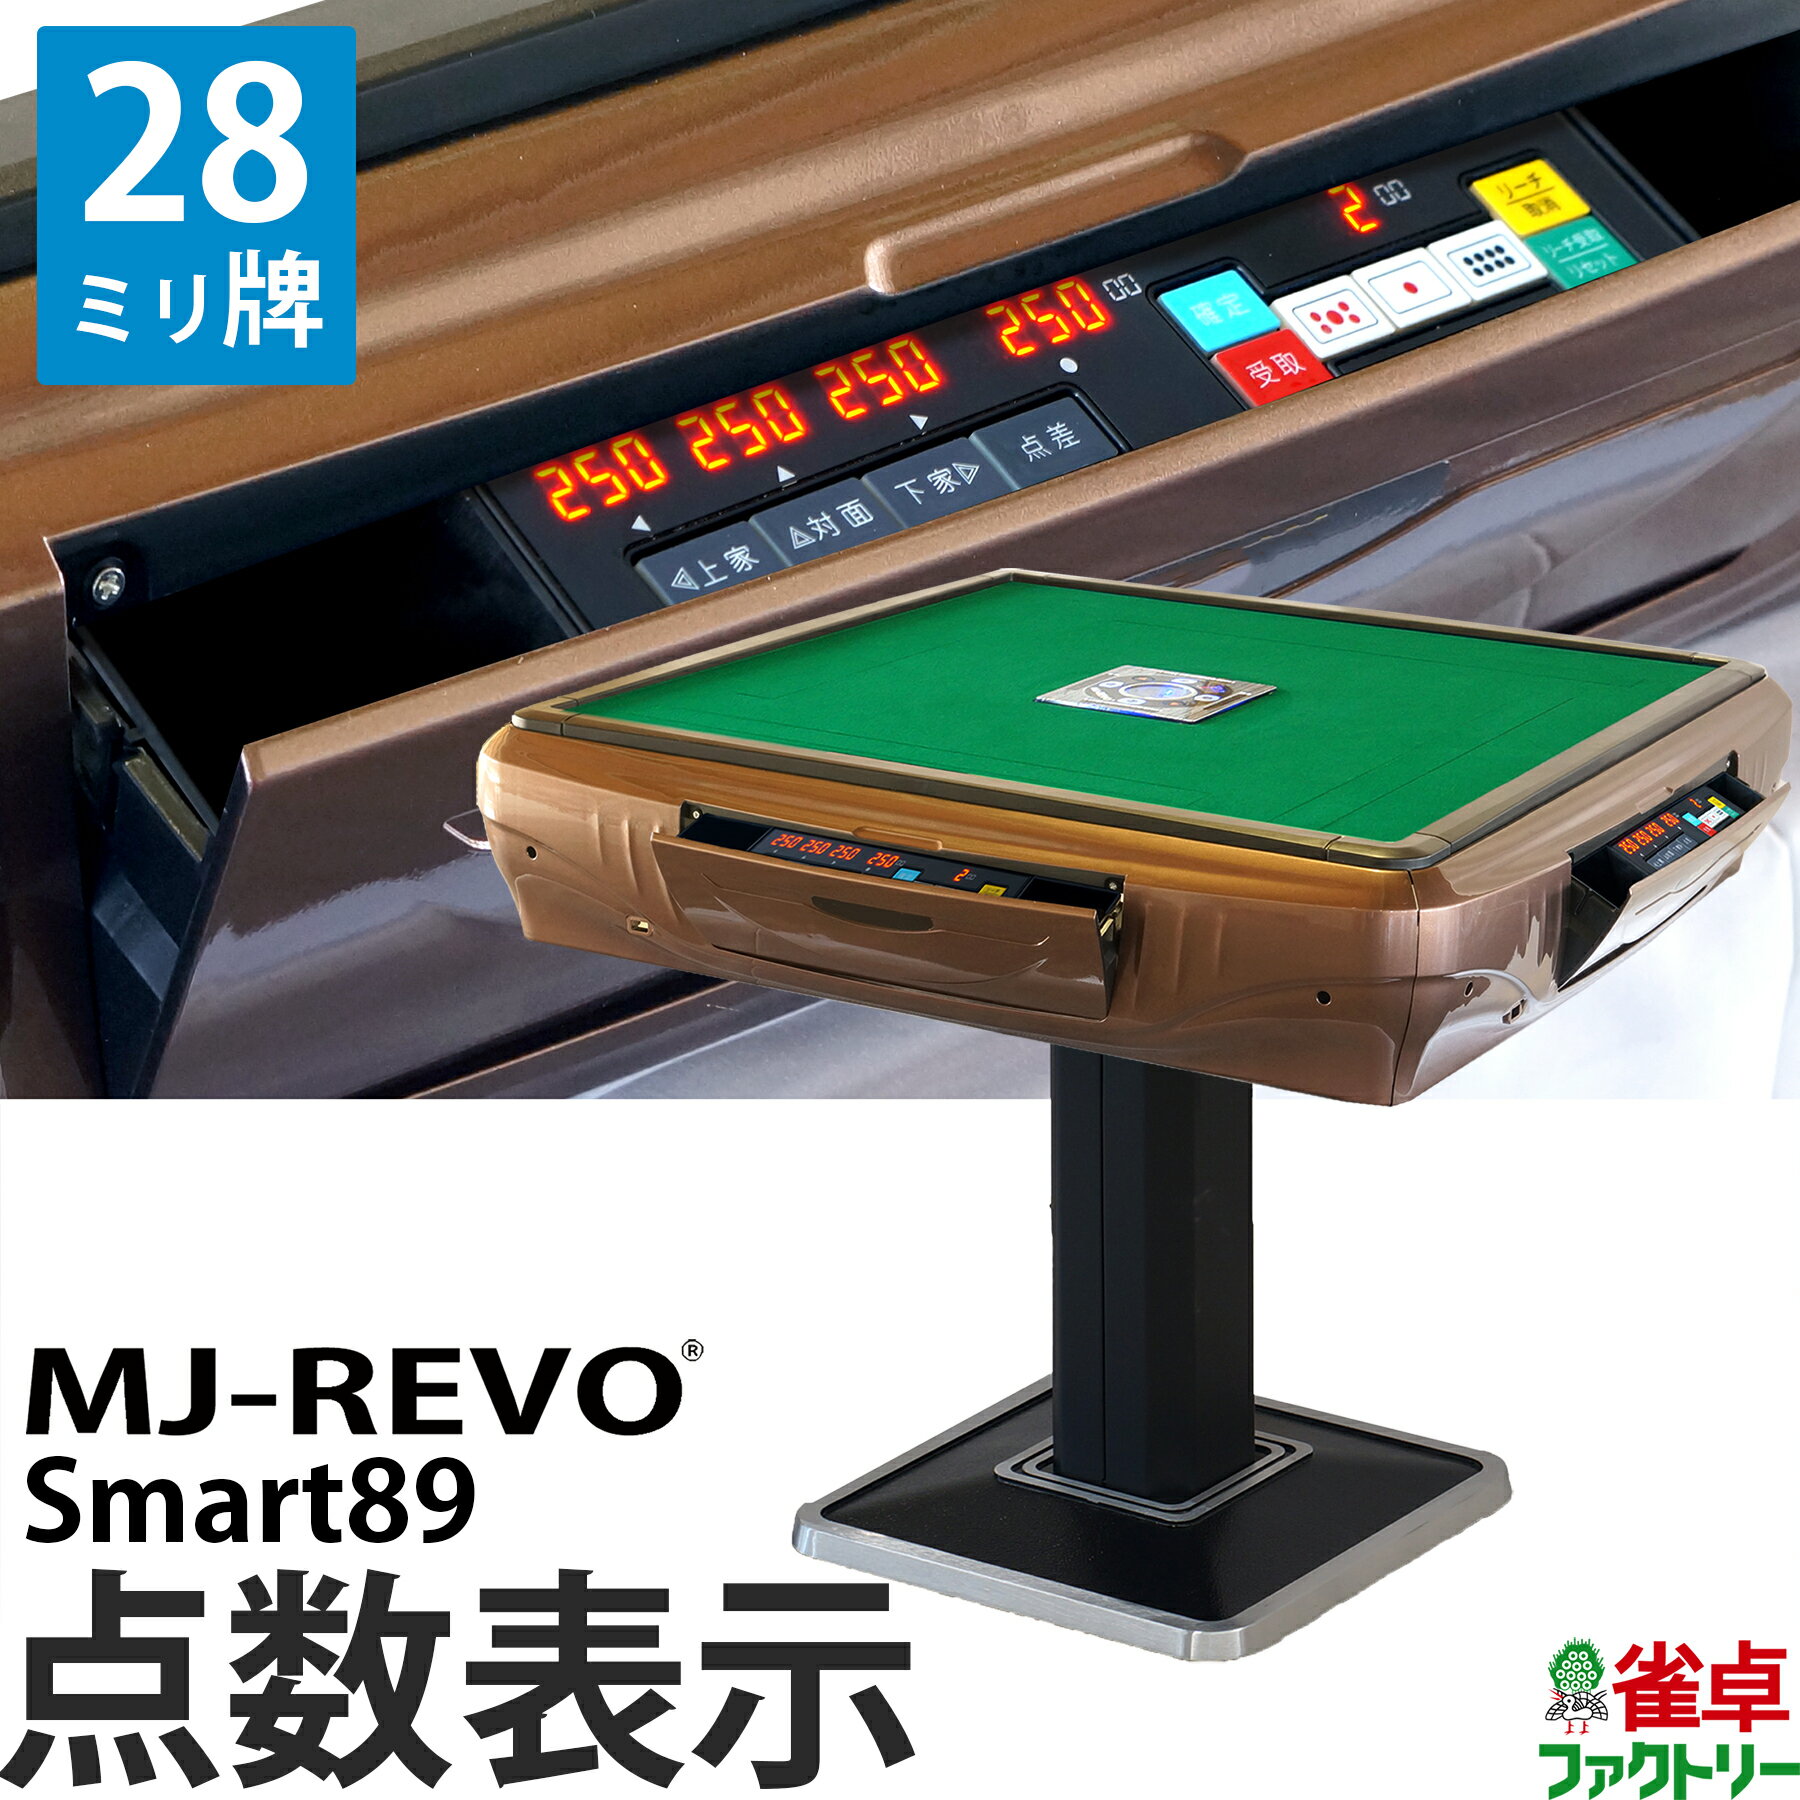 全自動麻雀卓 点数表示 MJ-REVO Smart89 28ミリ牌 3年保証 静音タイプ スマート 日本仕様 雀卓 麻雀牌 ブラウン